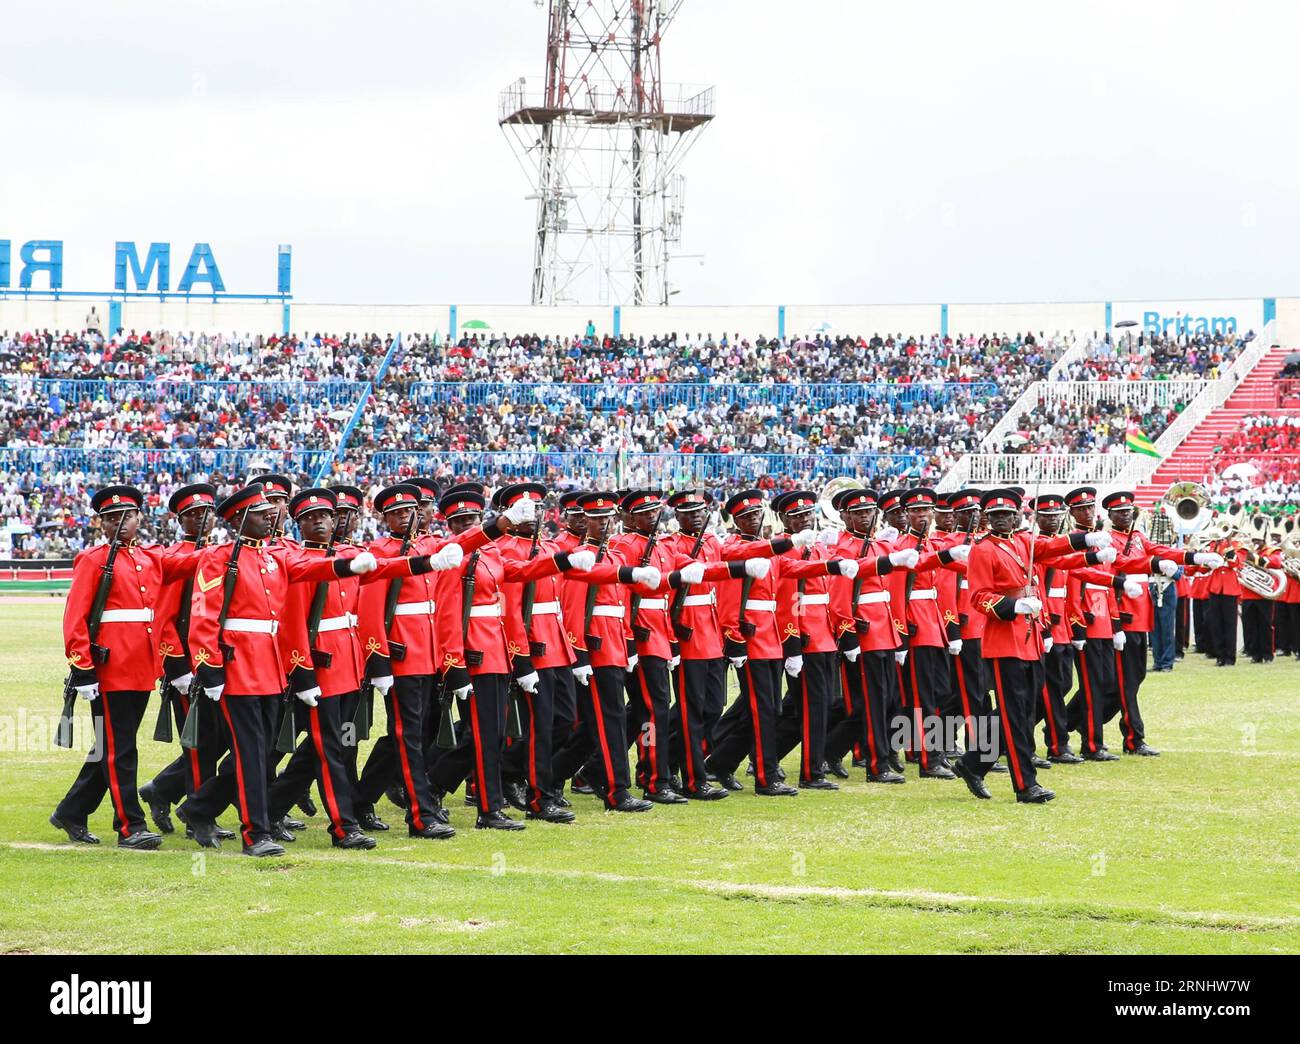 Feierlichkeiten zu Kenias 53. Unabhängigkeitstag in Nairobi (161212) -- NAIROBI, 12 dicembre 2016 -- soldati della Kenya Defense Force march durante le celebrazioni per celebrare il 53° anniversario dell'indipendenza della nazione al Nyayo National Stadium di Nairobi, Kenya, 12 dicembre 2016. ) (dtf) GIORNATA DELL'INDIPENDENZA KENYA-NAIROBI PanxSiwei PUBLICATIONxNOTxINxCHN celebrazioni per il Kenya 53 giorno dell'indipendenza a Nairobi 161212 Nairobi DEC 12 2016 soldati della forza di difesa del Kenya marcia durante le celebrazioni per celebrare il 53 ° anniversario dell'indipendenza della Nazione ALLO stadio nazionale di Nyayo a Nairobi K Foto Stock